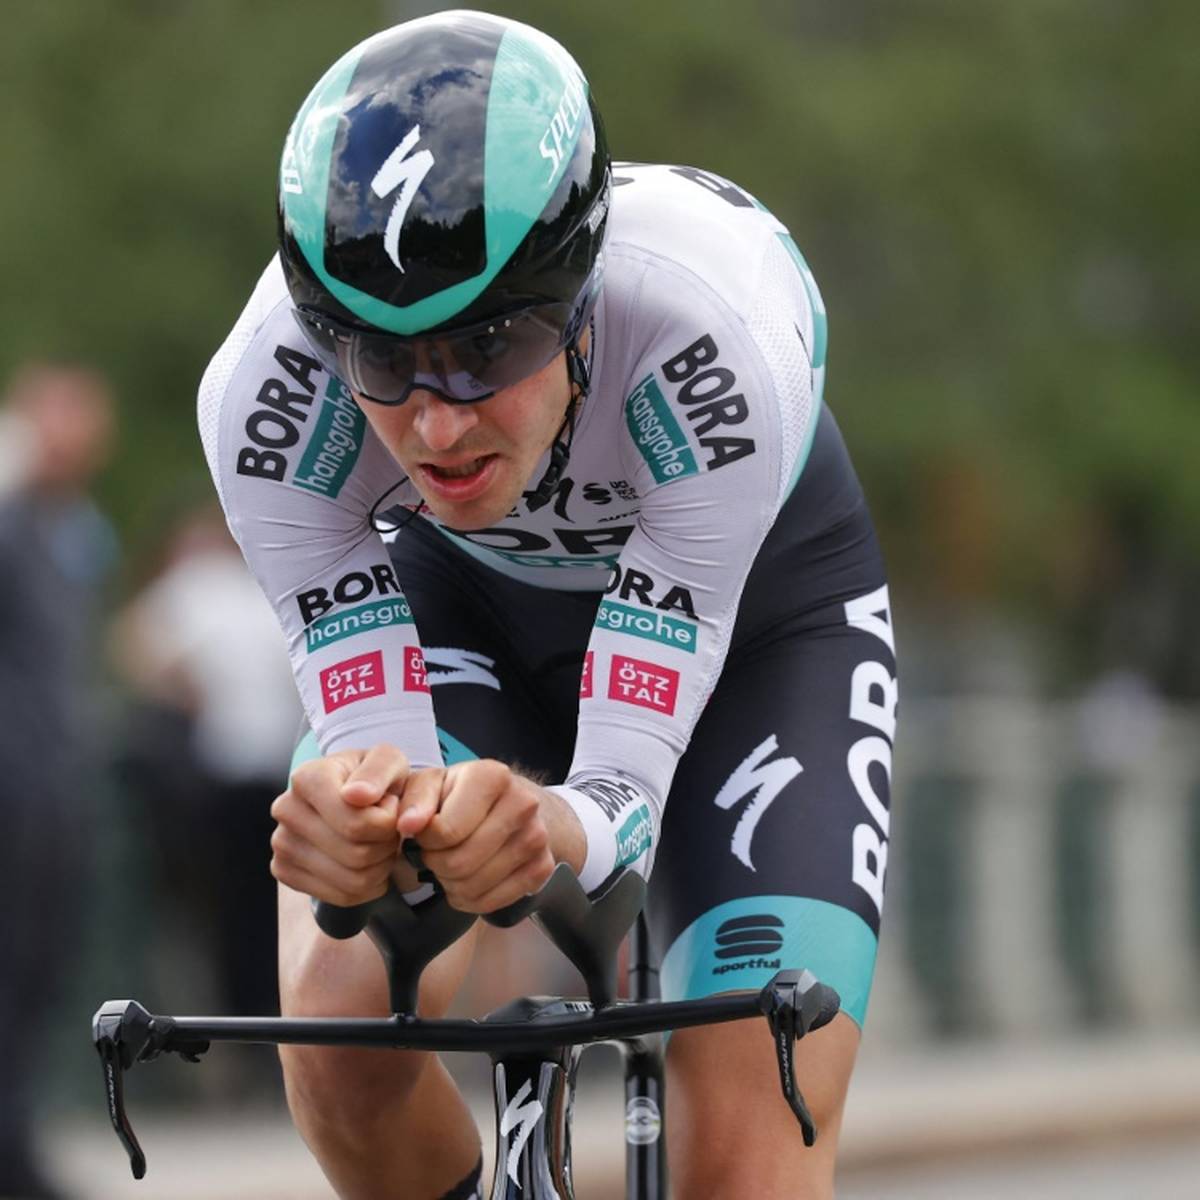 Der deutsche Radprofi Emanuel Buchmann verpasst die am Freitag beginnende Vuelta in Spanien.